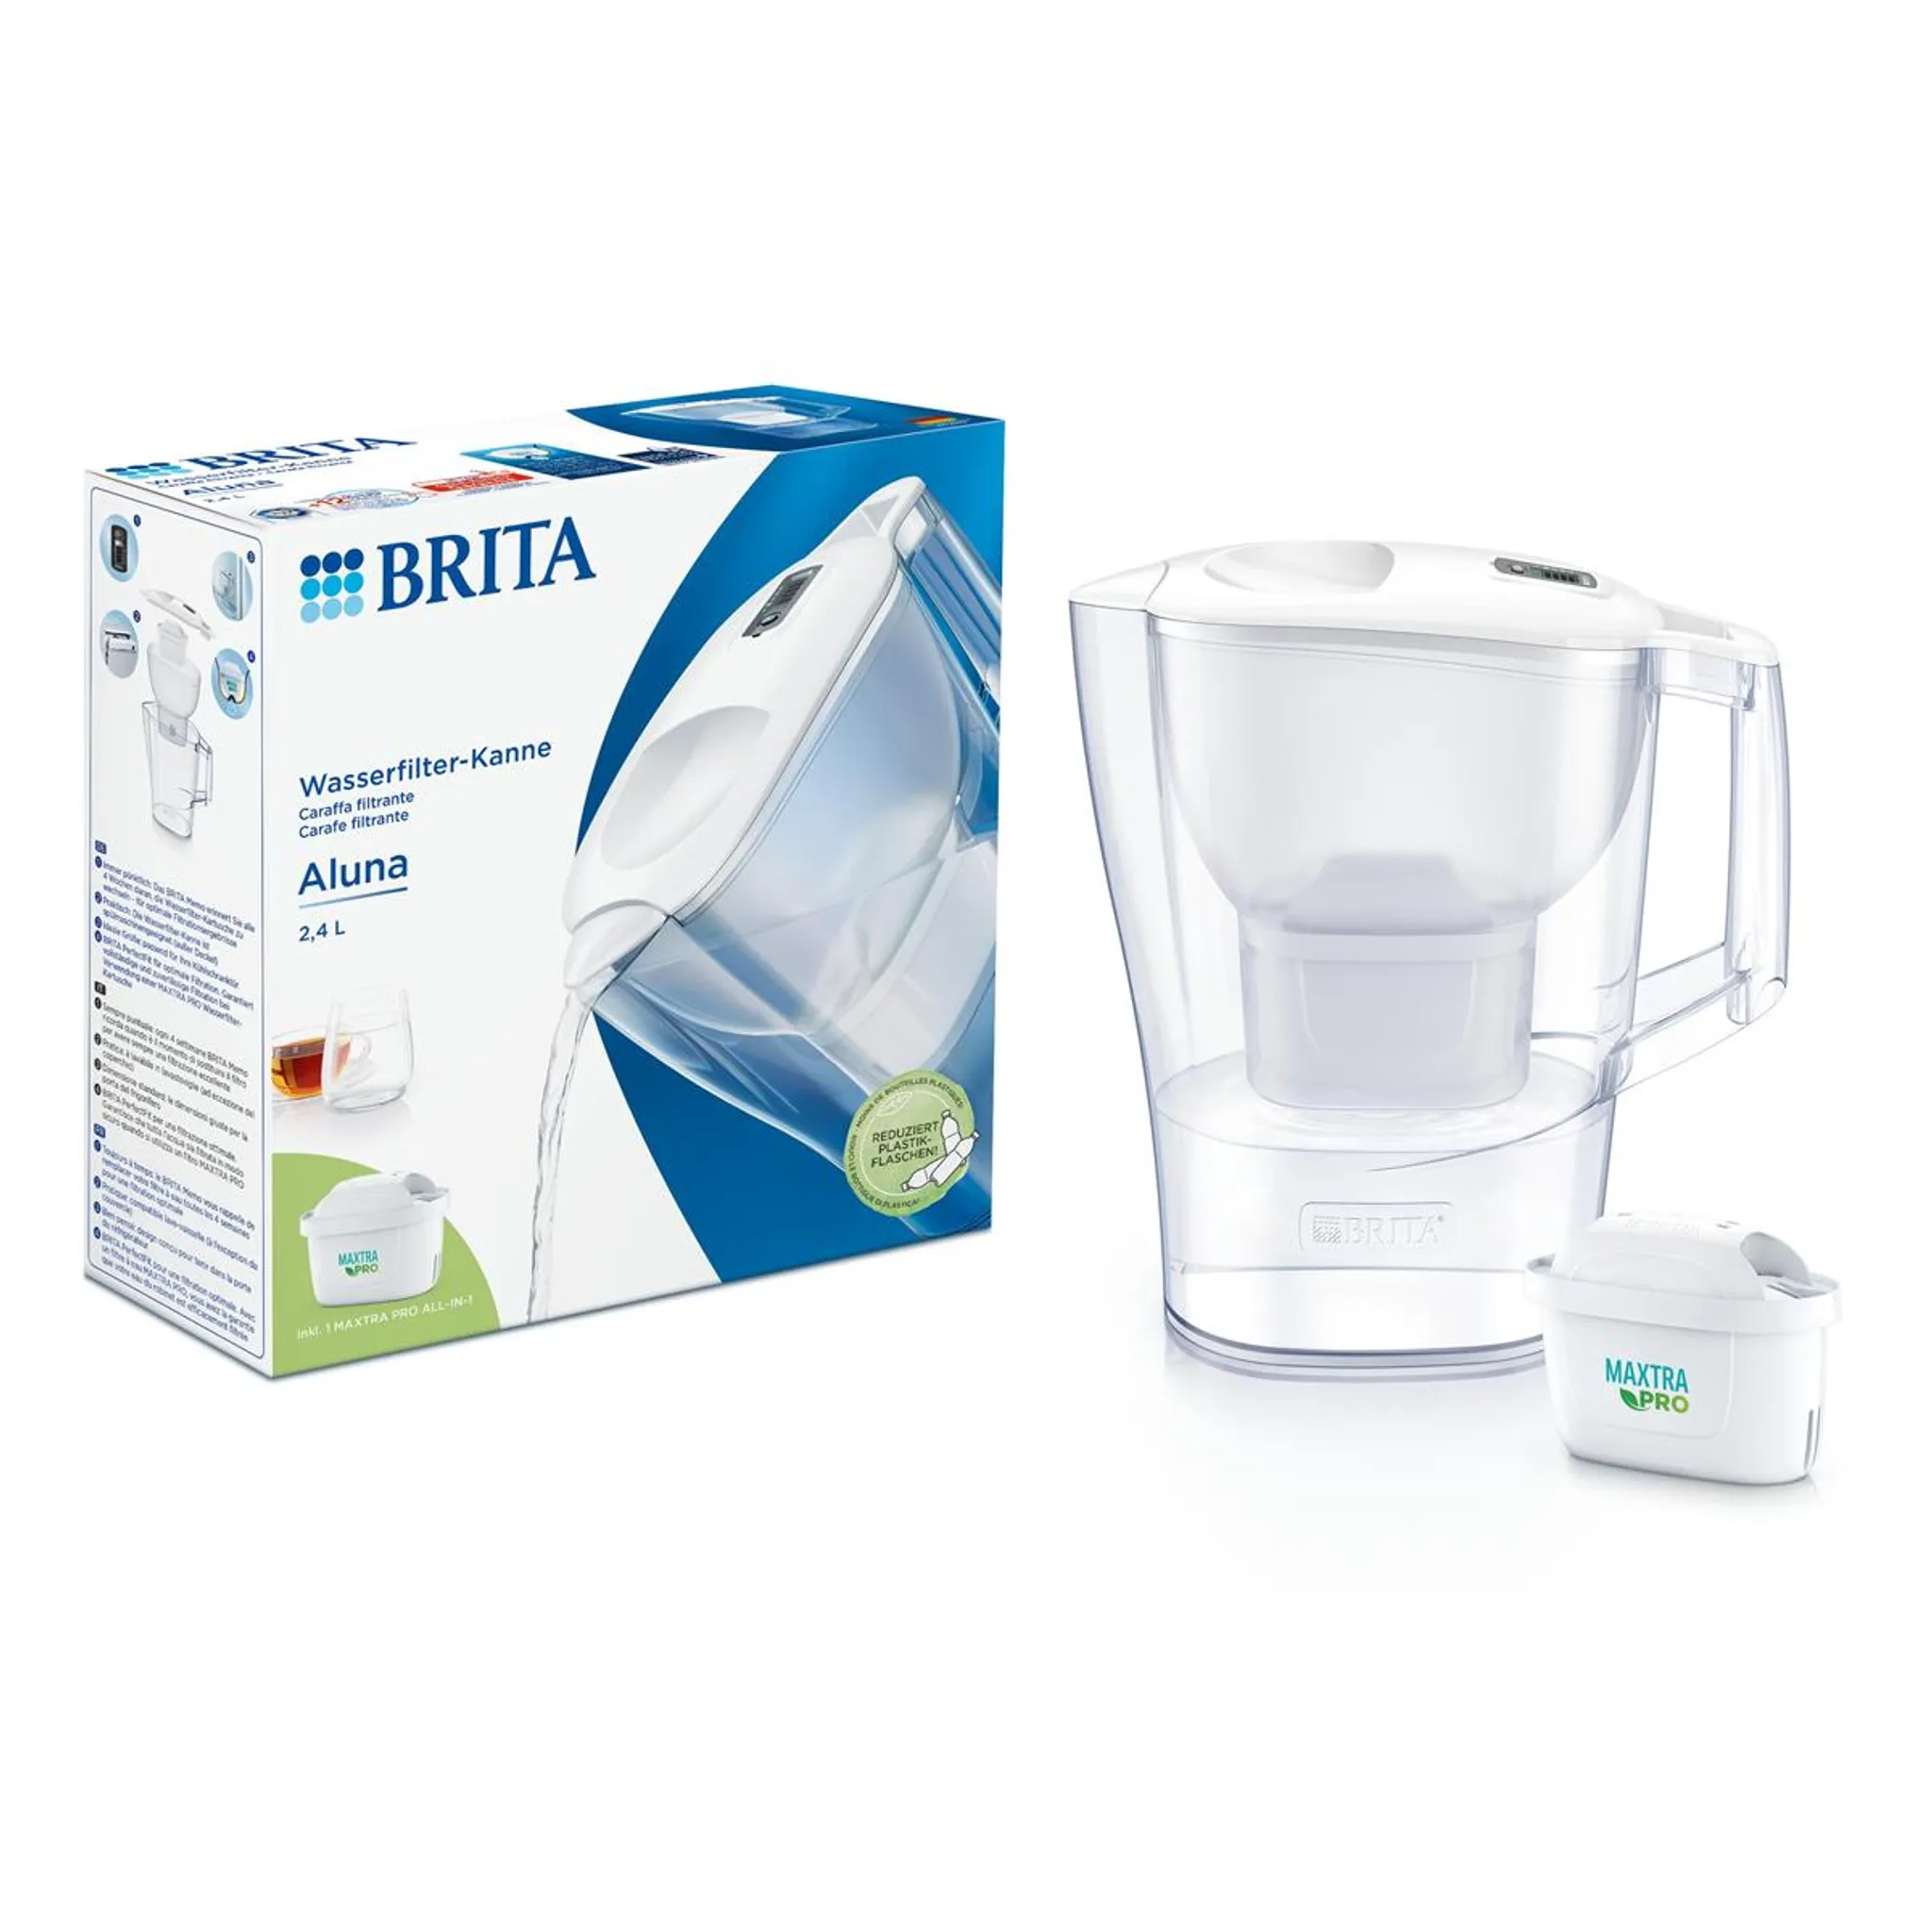 Wasserfilter-Kanne Brita weiß Aluna 2,4L